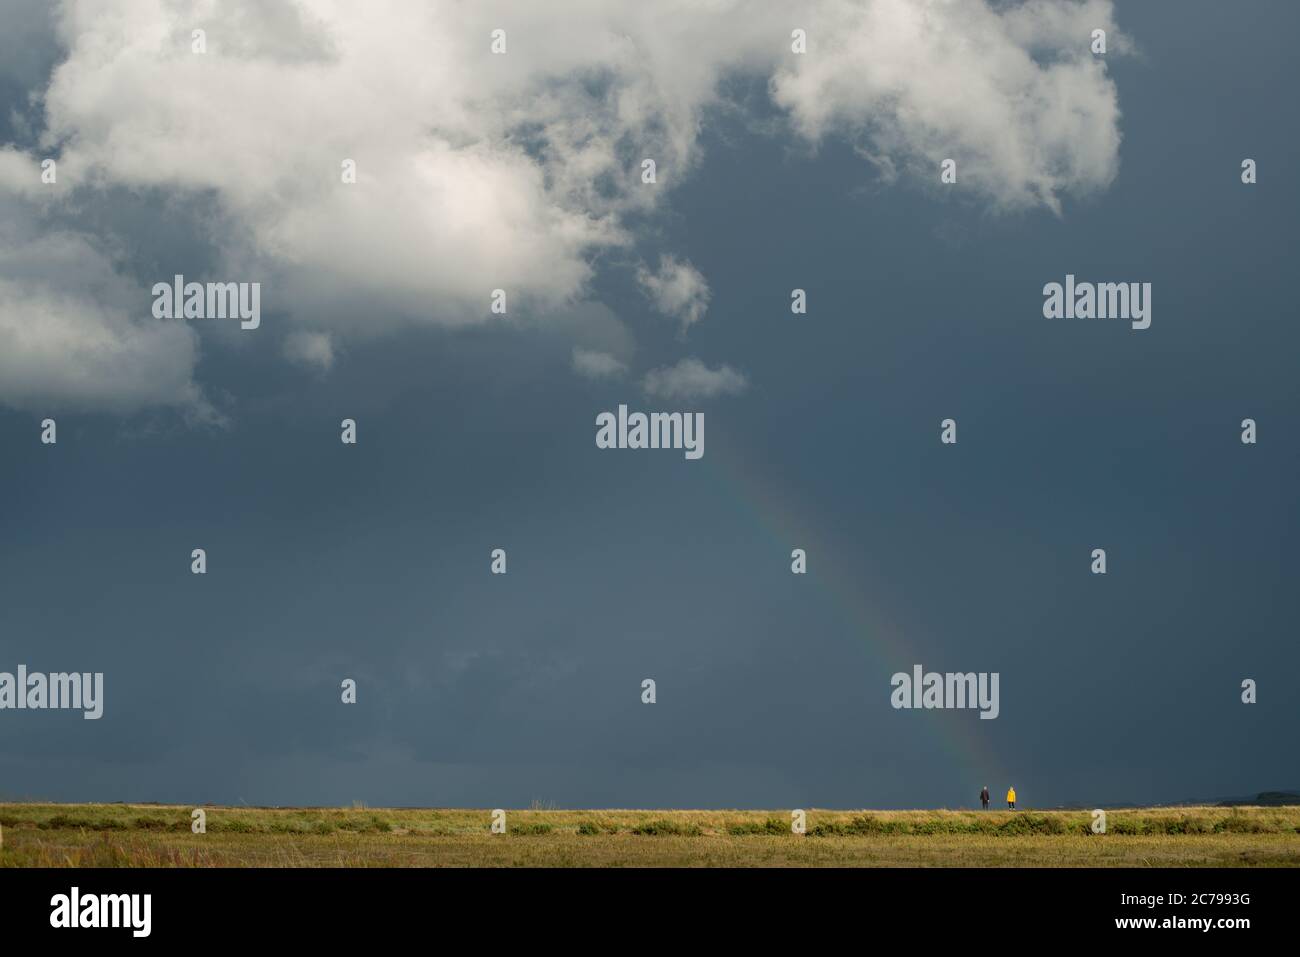 Classica immagine minima del cielo scuro con nuvola bianca e un arcobaleno che si inarca dalla nuvola e mette in evidenza due persone ai piedi dell'arcobaleno Foto Stock